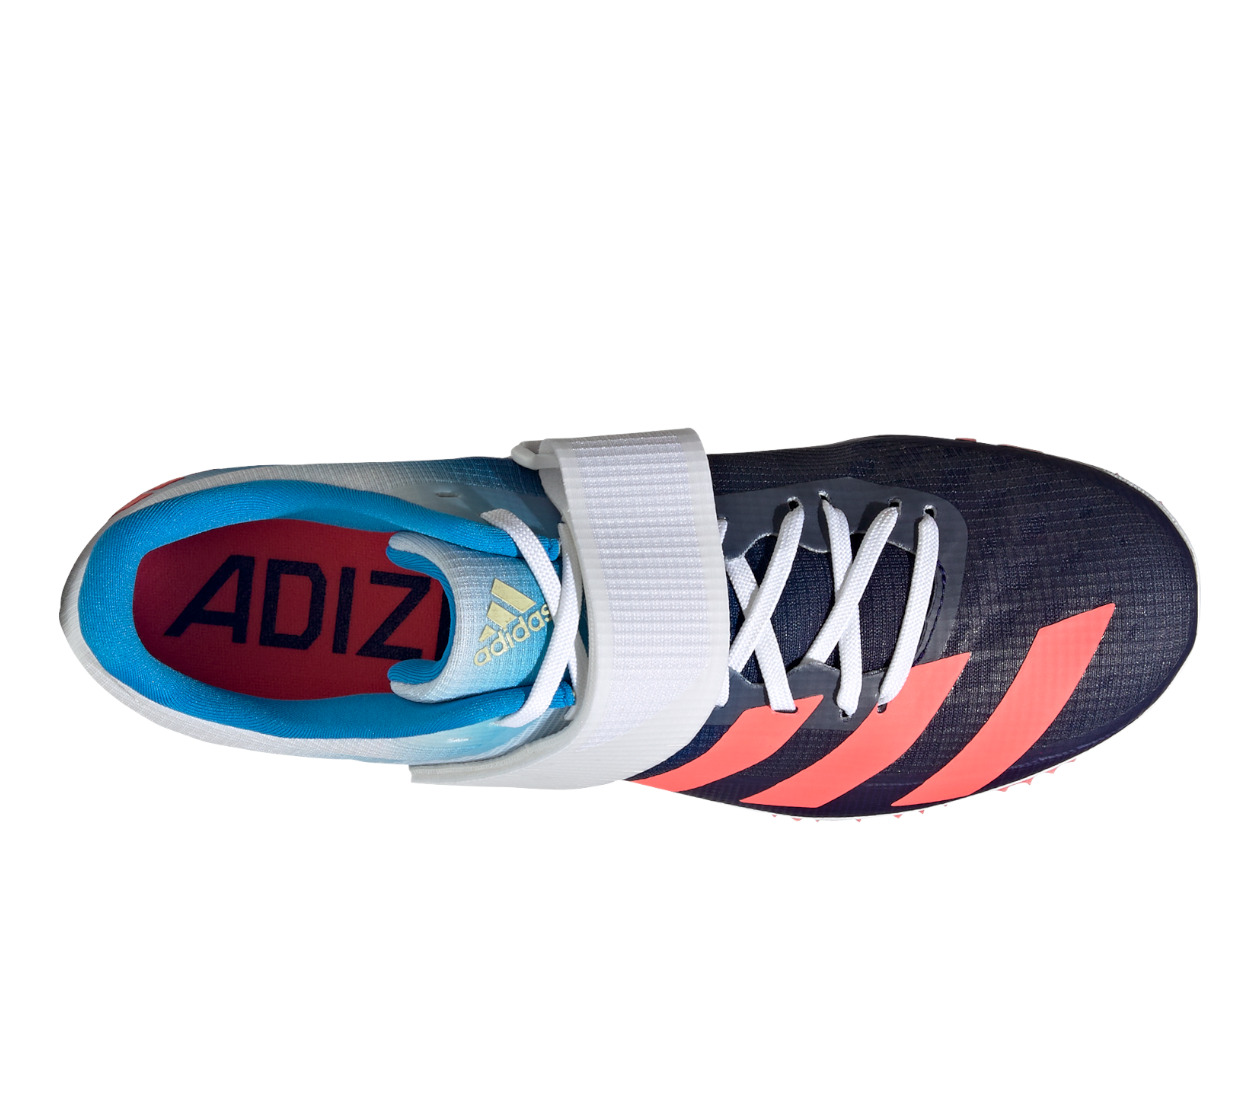 Adidas Adizero HJ (M) Scarpa chiodata da salto in alto | LBM Sport